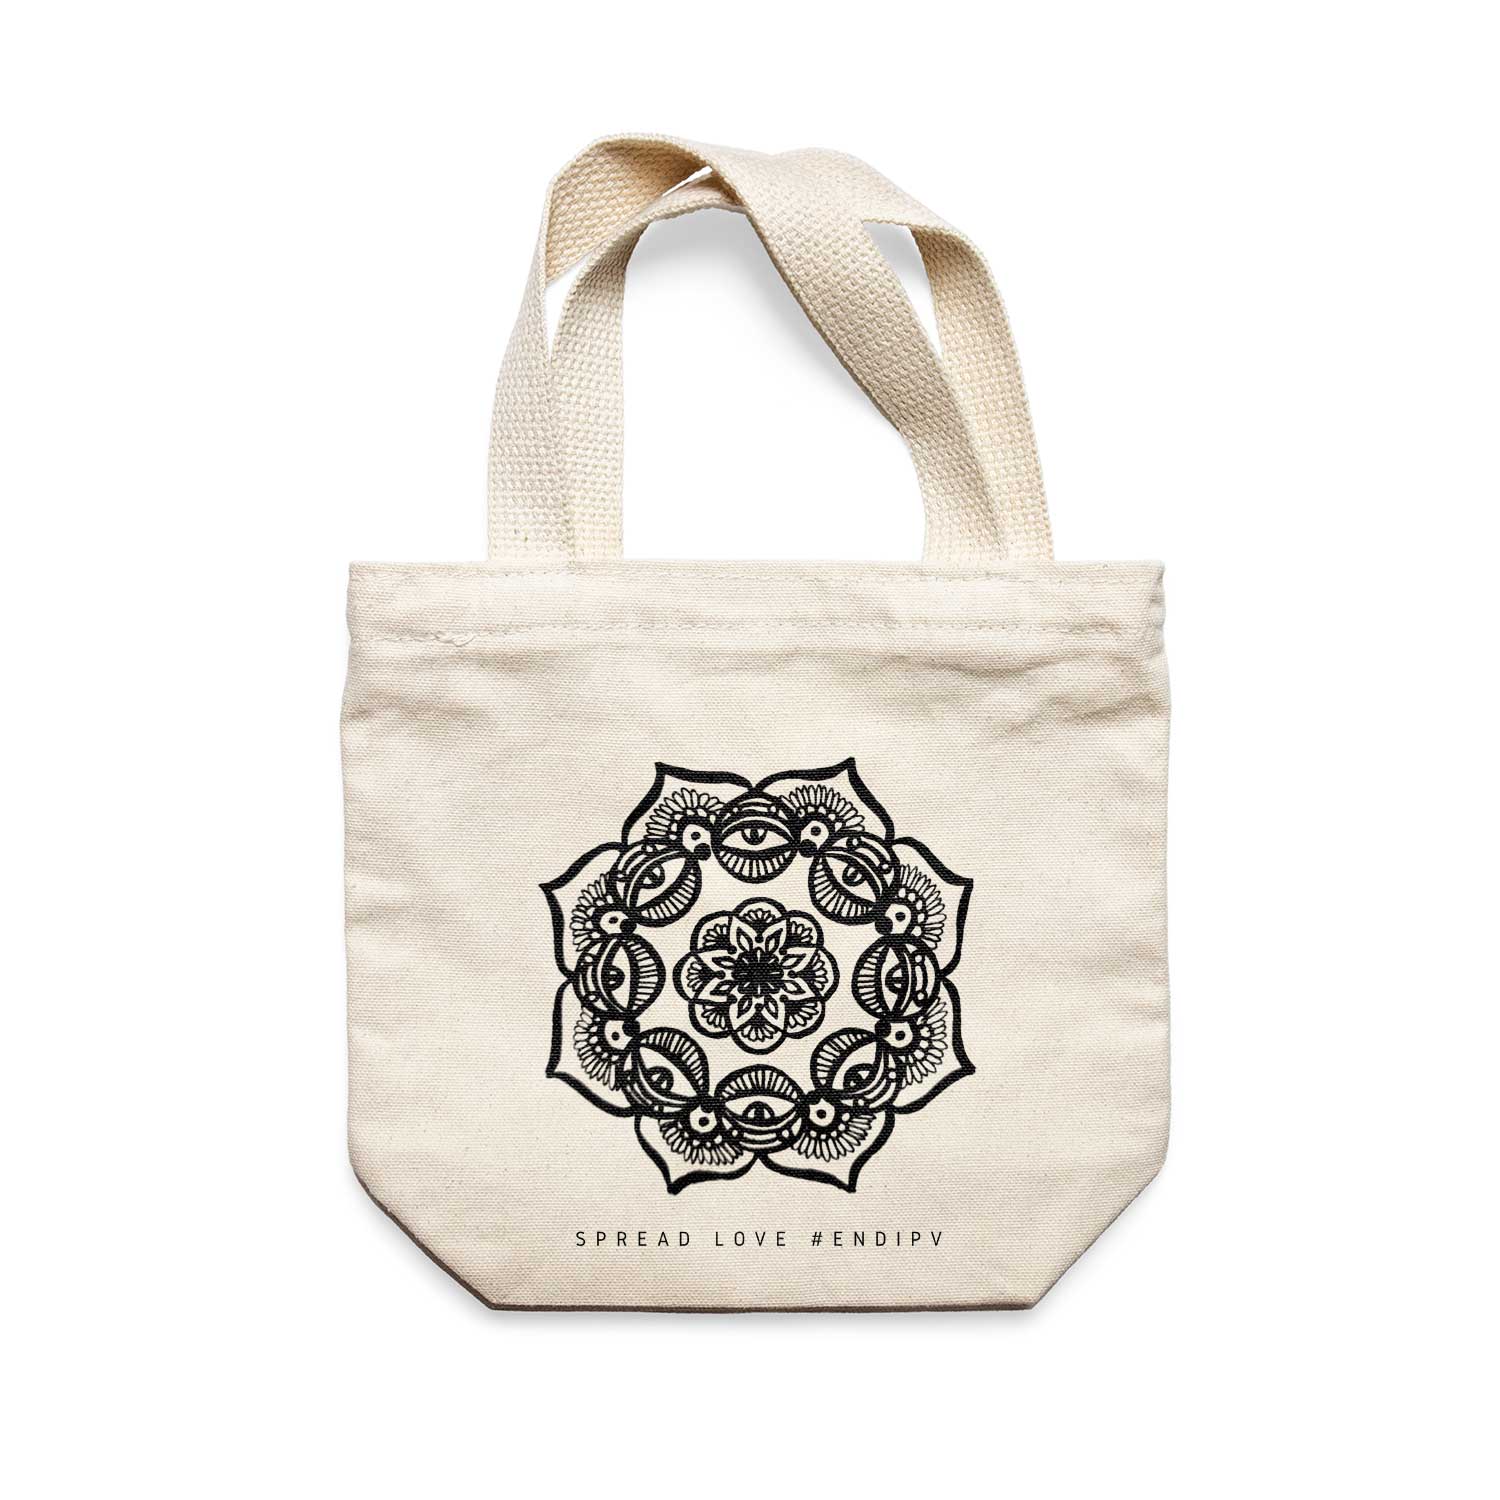 תיק צד לנשים וגברים מבד 100% כותנה טבעית בעיצוב Several eyes Mandala Tote Bag מציור מקורי של גאיה